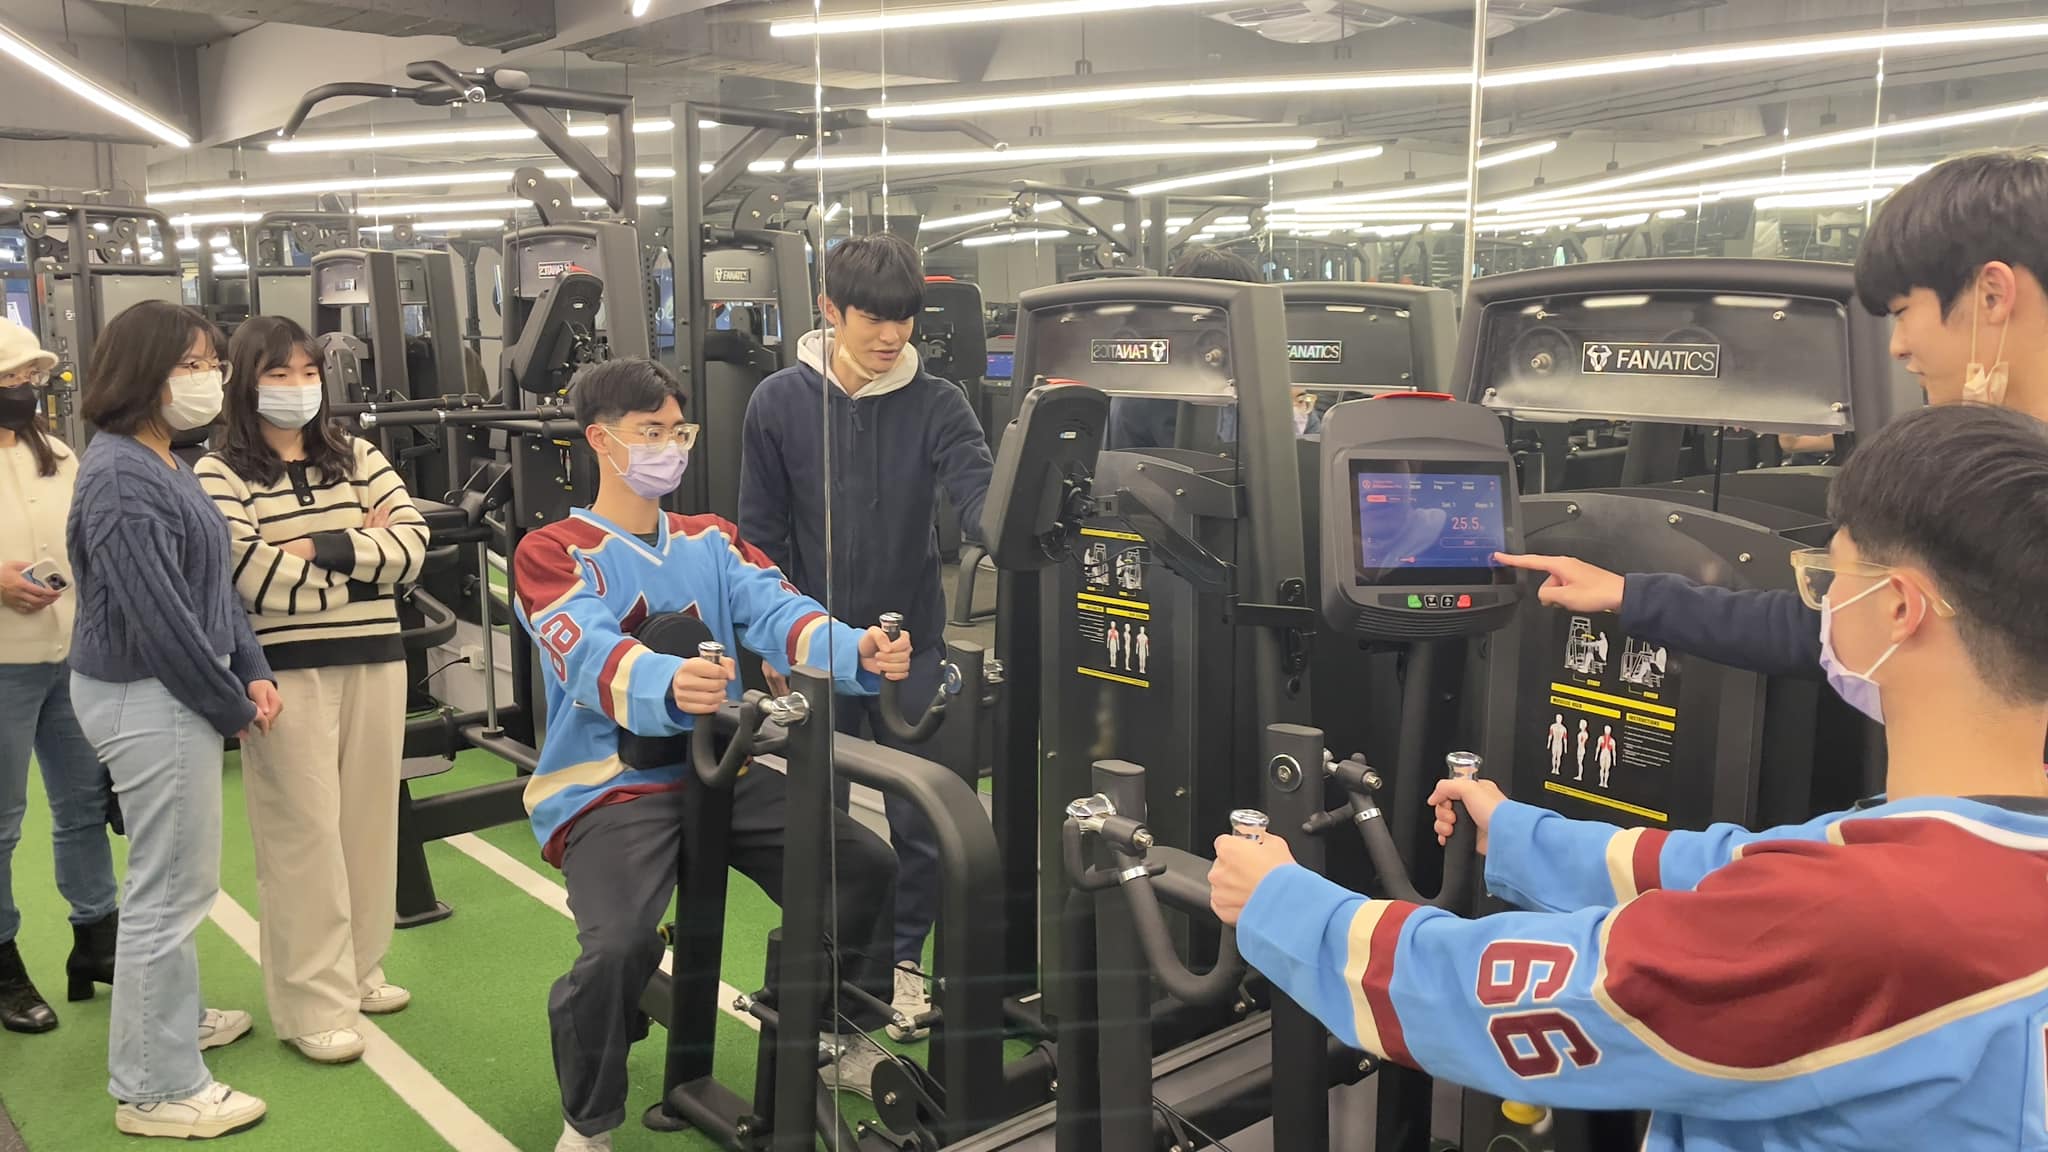 板橋體育場「T-SoX飈動精準健康促進中心」4/1-13試營運 運動科技免費體驗